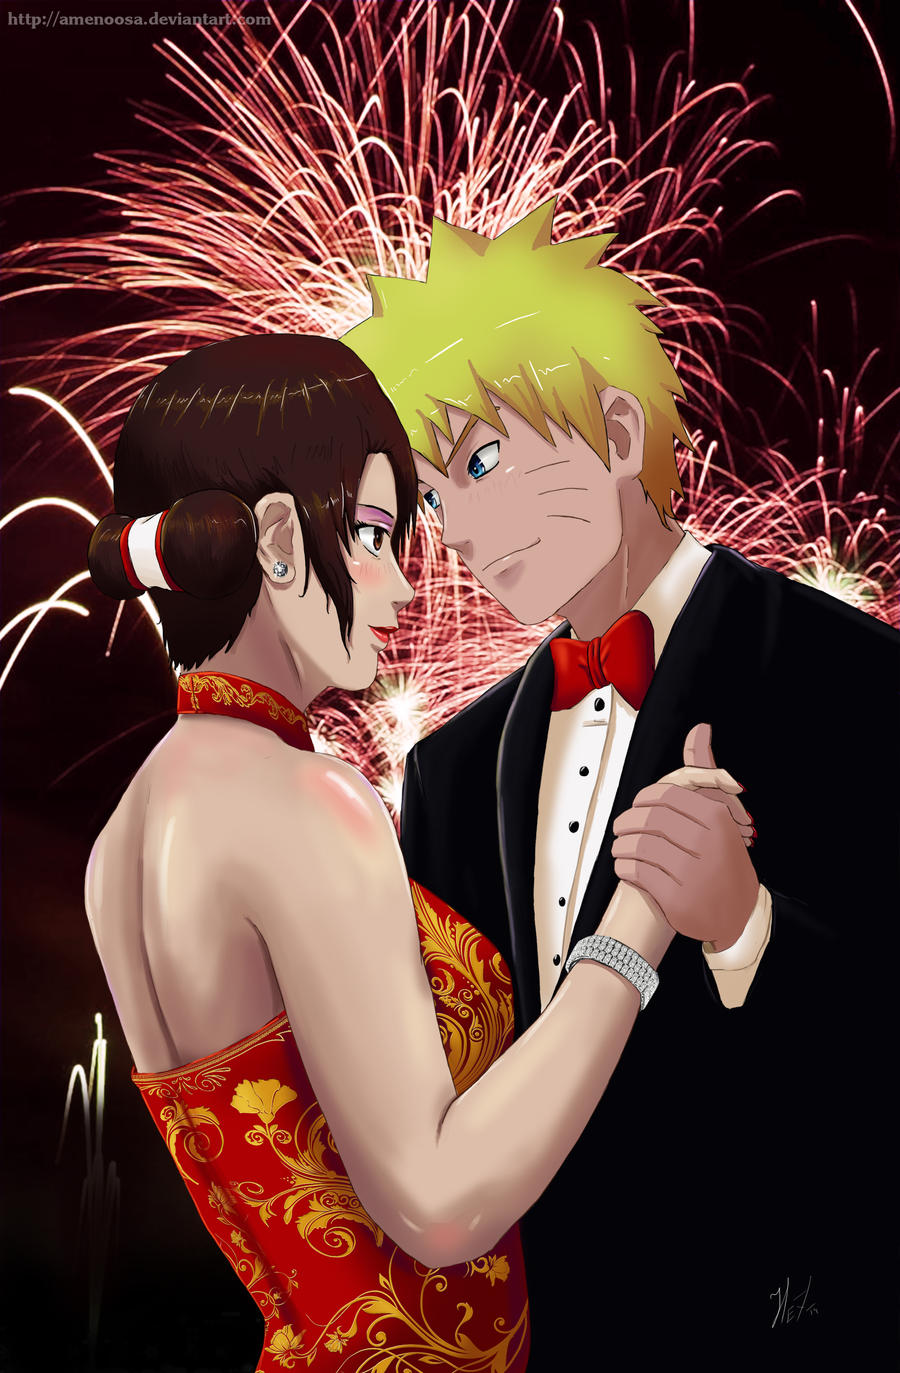 St beet onderhoud Commission: Naruto x Tenten - Happy New Year by Amenoosa on DeviantArt